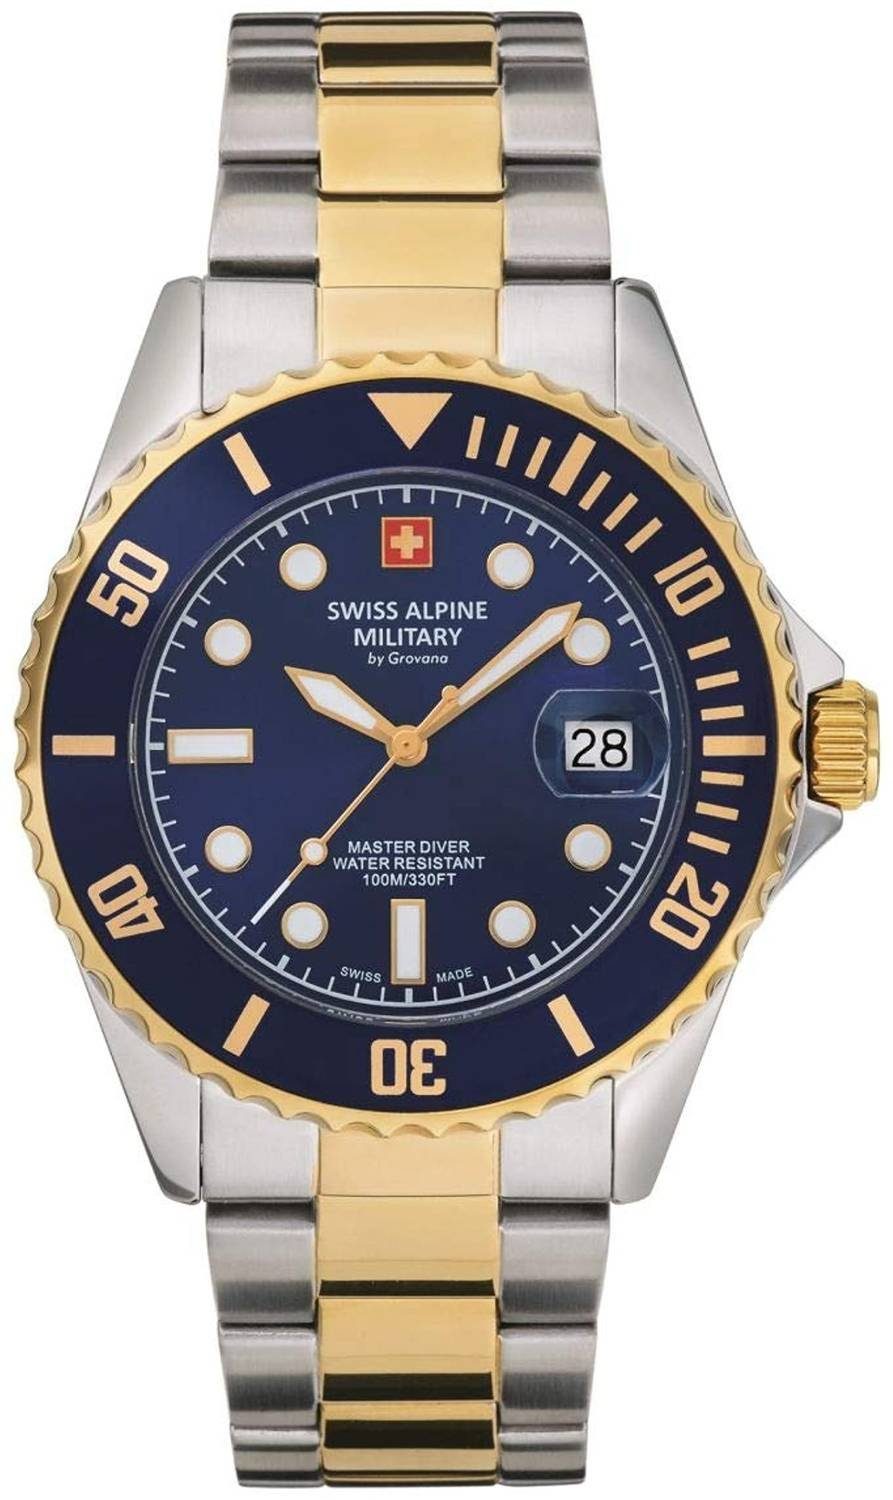 Herren Uhren Swiss Alpine Military Schweizer Uhr 7053.1145